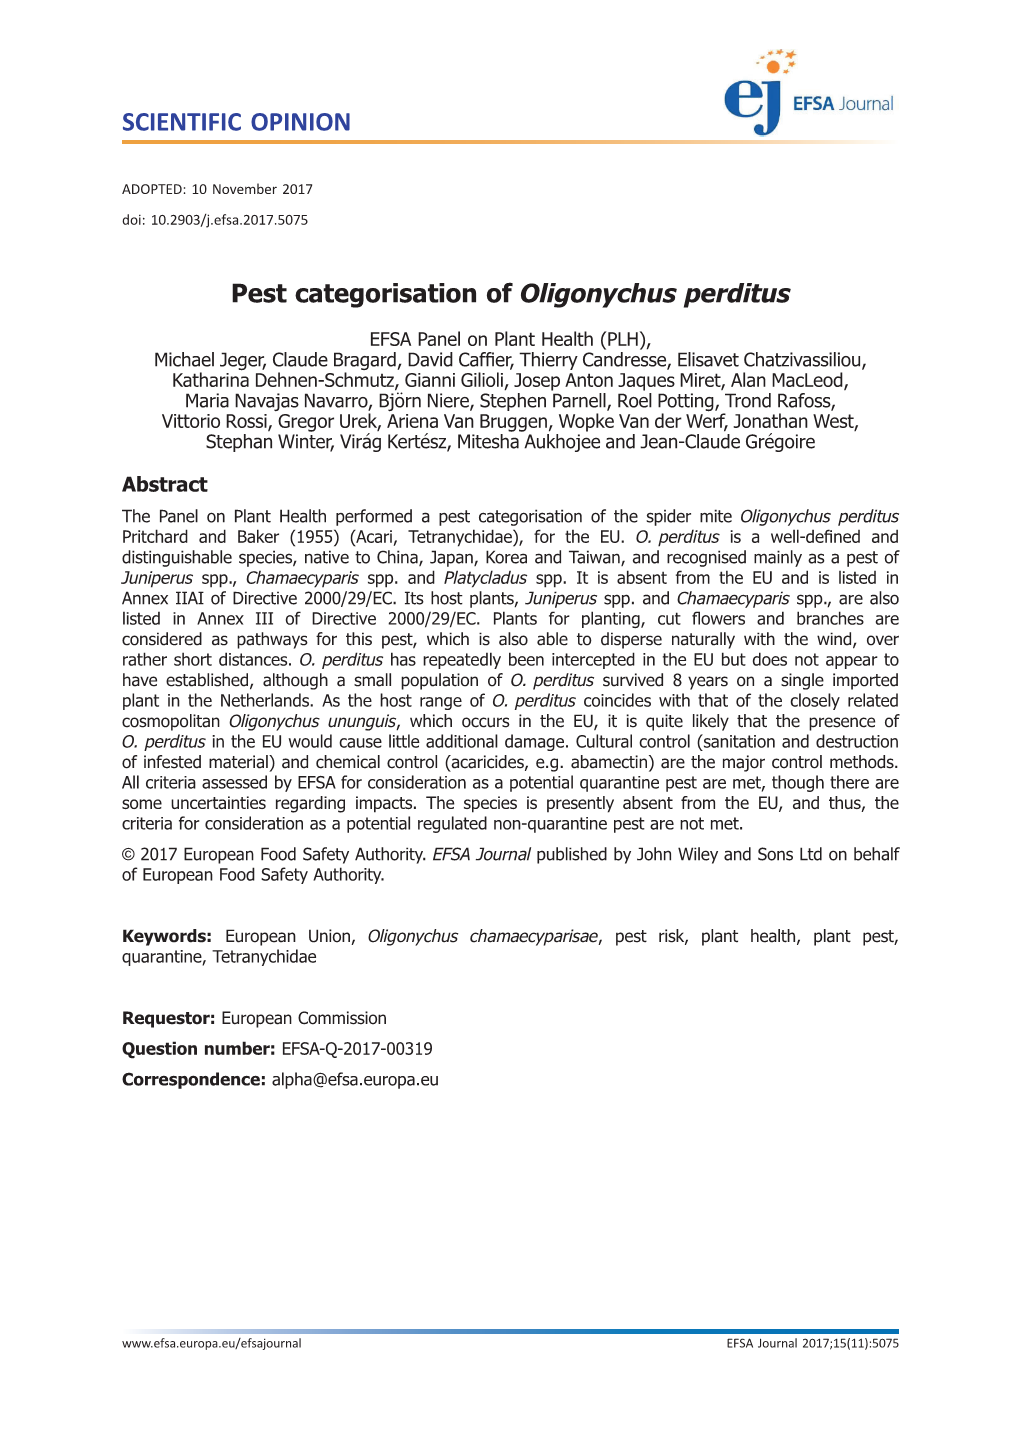 Pest Categorisation of Oligonychus Perditus